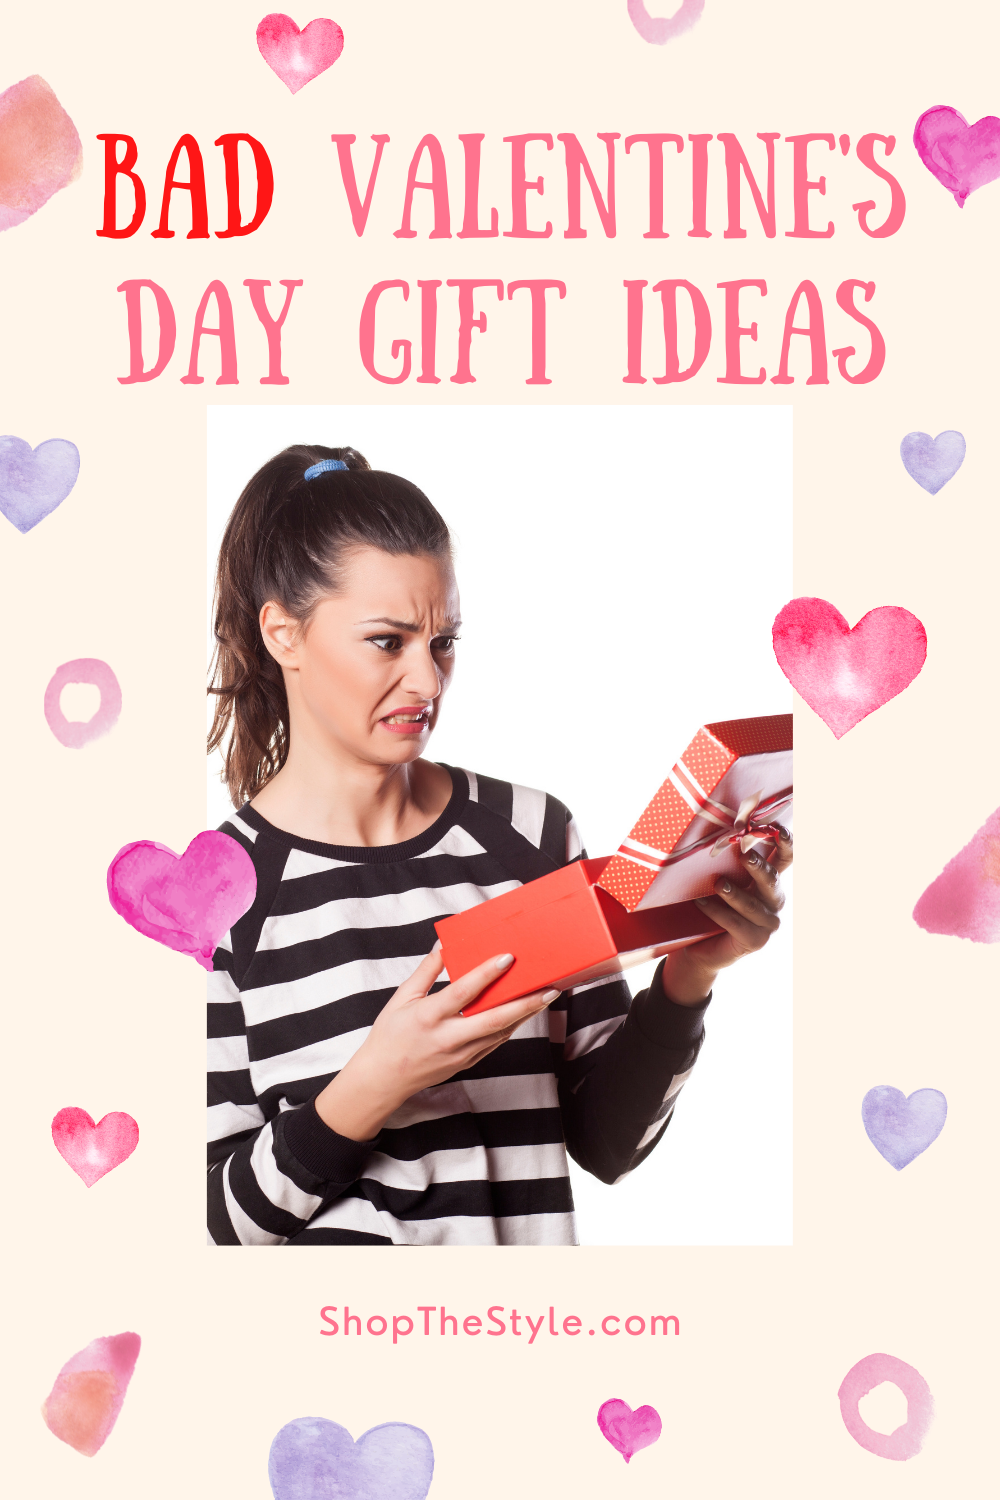 7 Bad Valentine's Day Gift Ideas